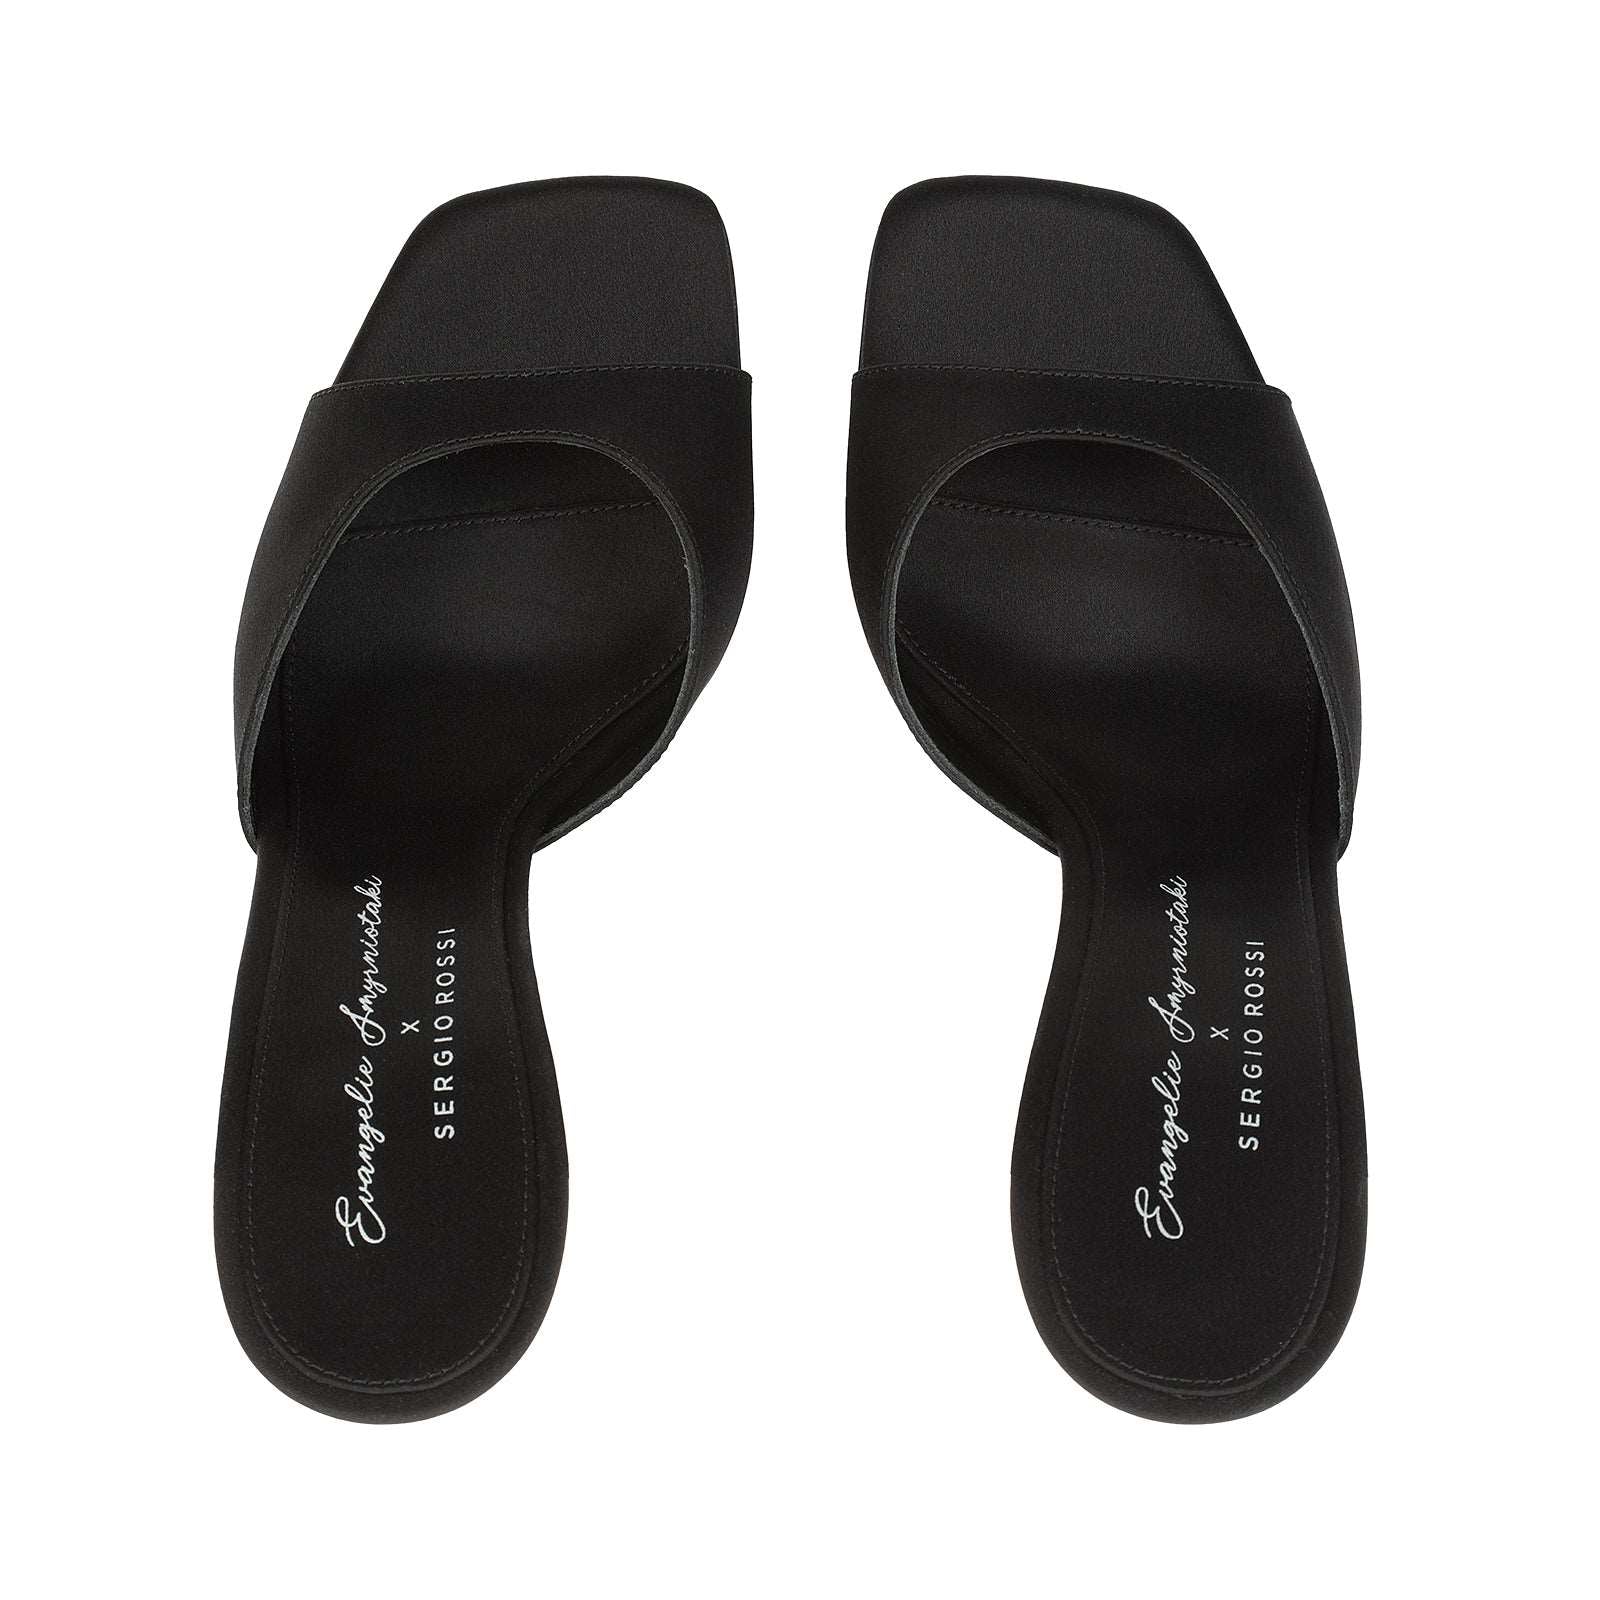 Evangelie Sandal Heel|B01180MTEZ02 Black